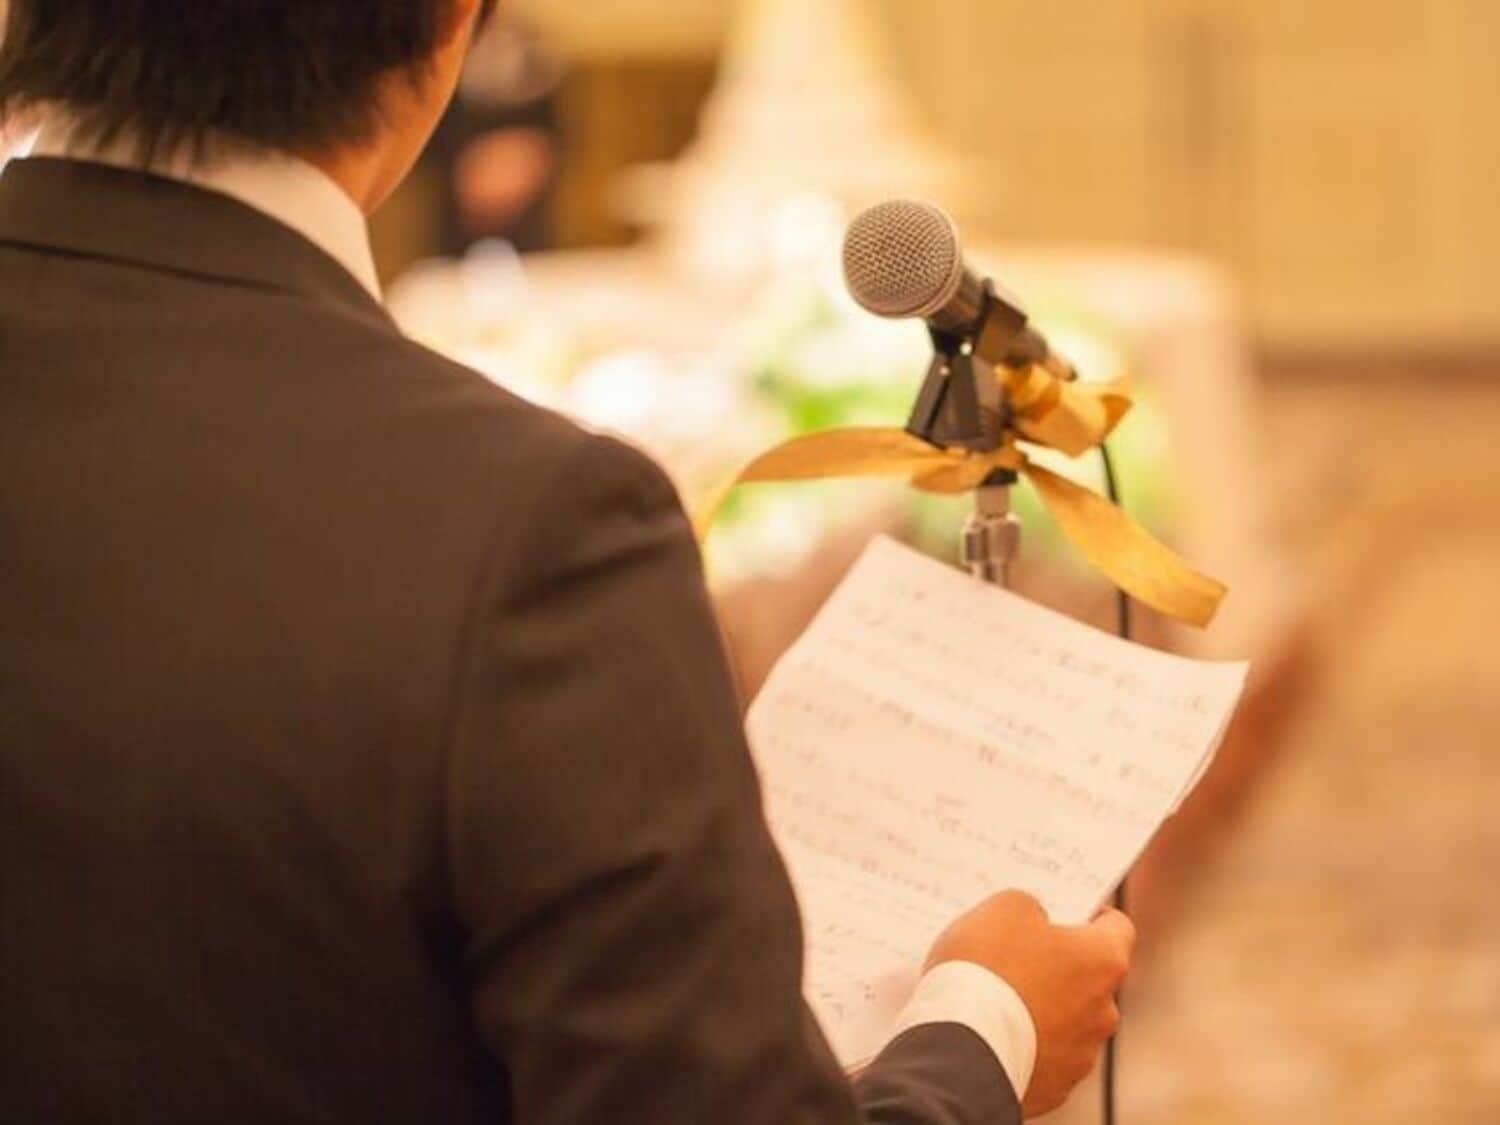 勝俣州和、萩本欽一が“結婚式嫌い”な理由を明かす「スピーチがウケない」の画像